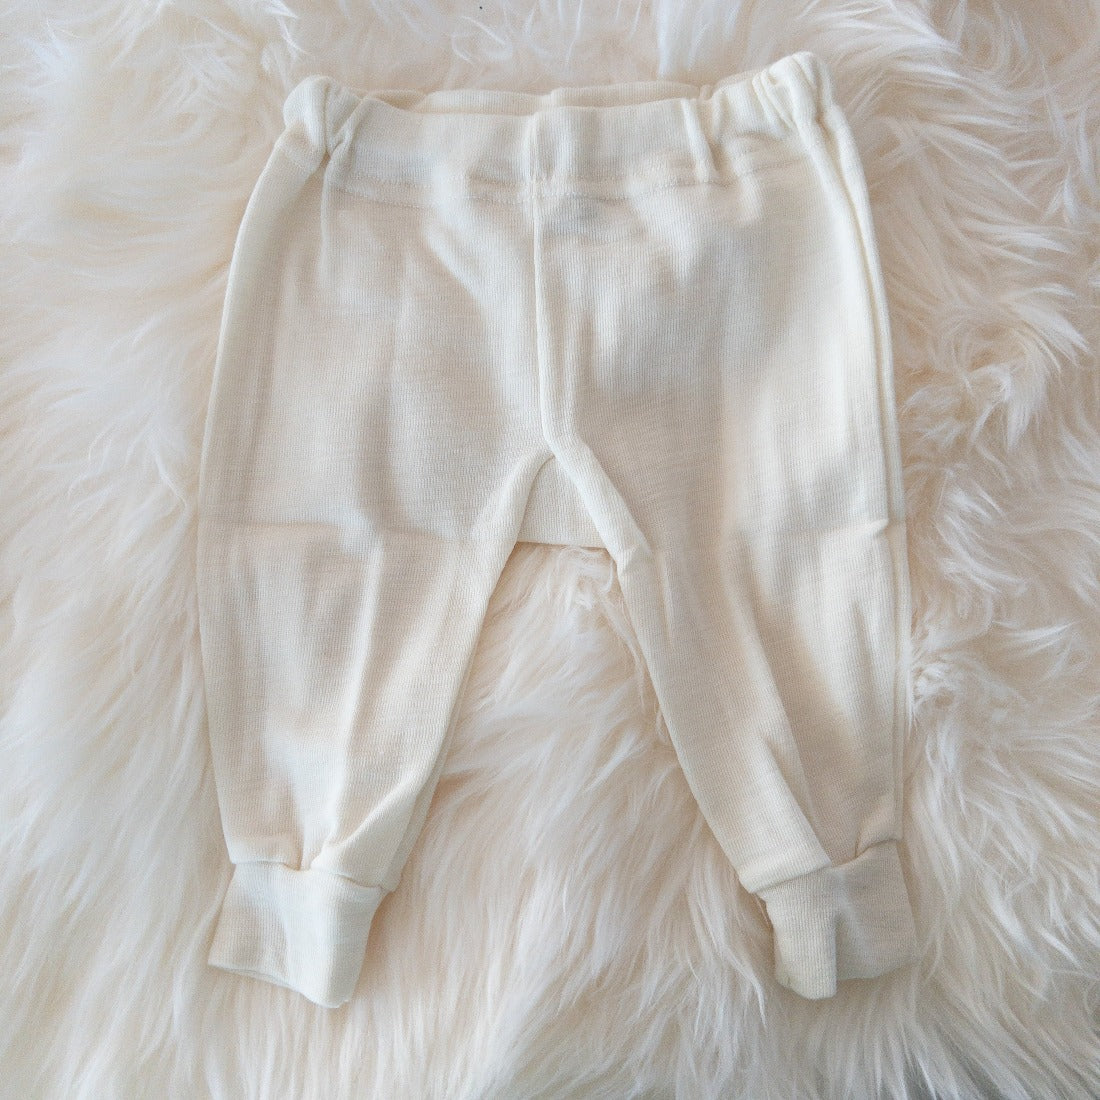 HOCOSA Organic Merino Wool Baby Pants